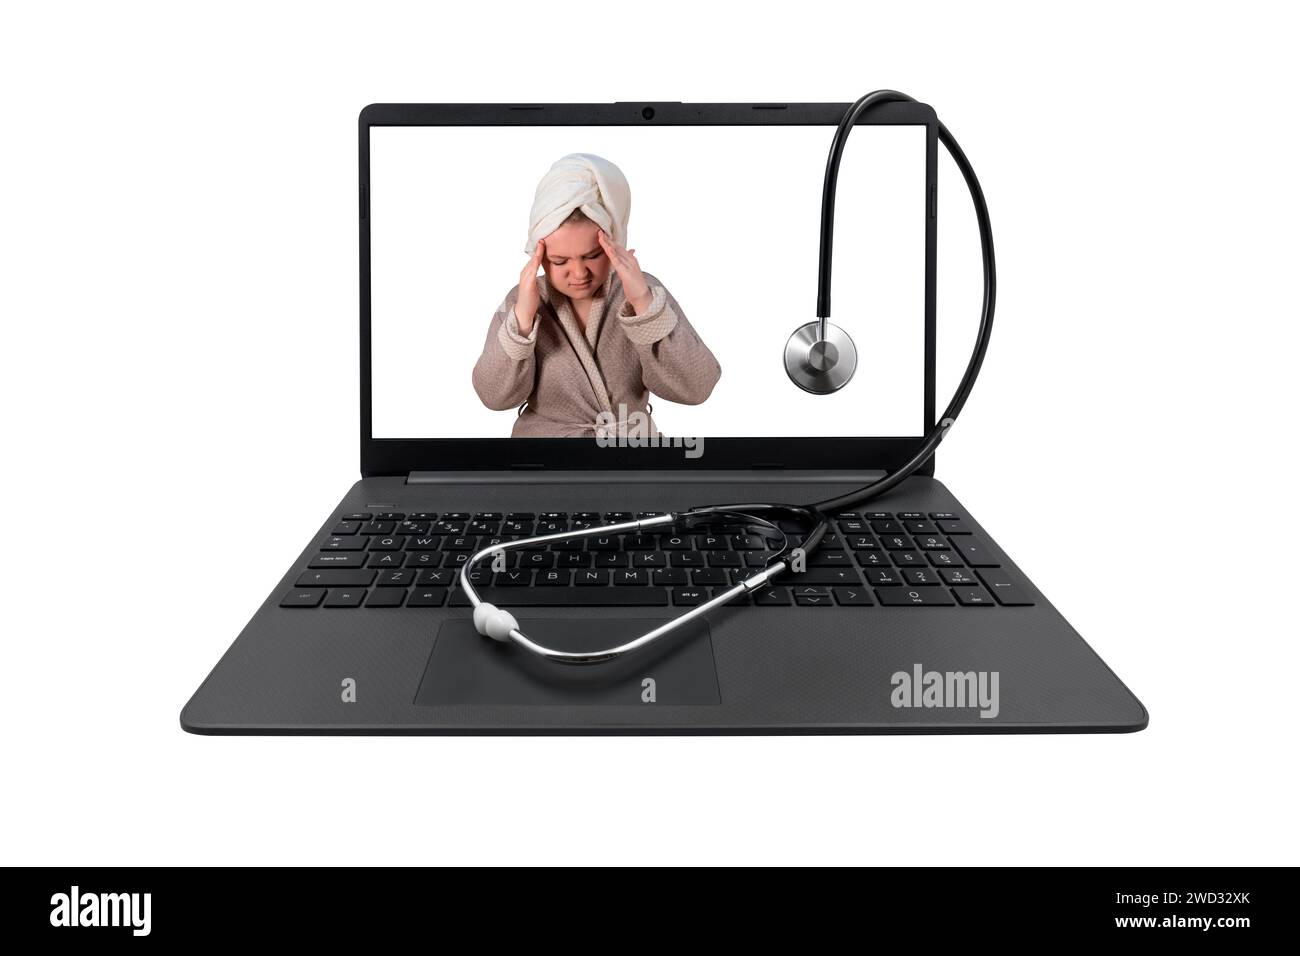 Laptop e stetoscopio medico isolati su sfondo bianco. Sullo schermo del notebook - una ragazza in accappatoio le ha fissato la testa tra le mani (mal di testa) Foto Stock